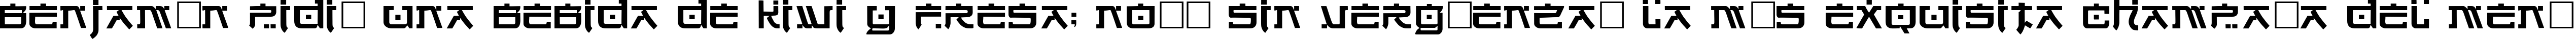 Пример написания шрифтом Hirosh текста на испанском